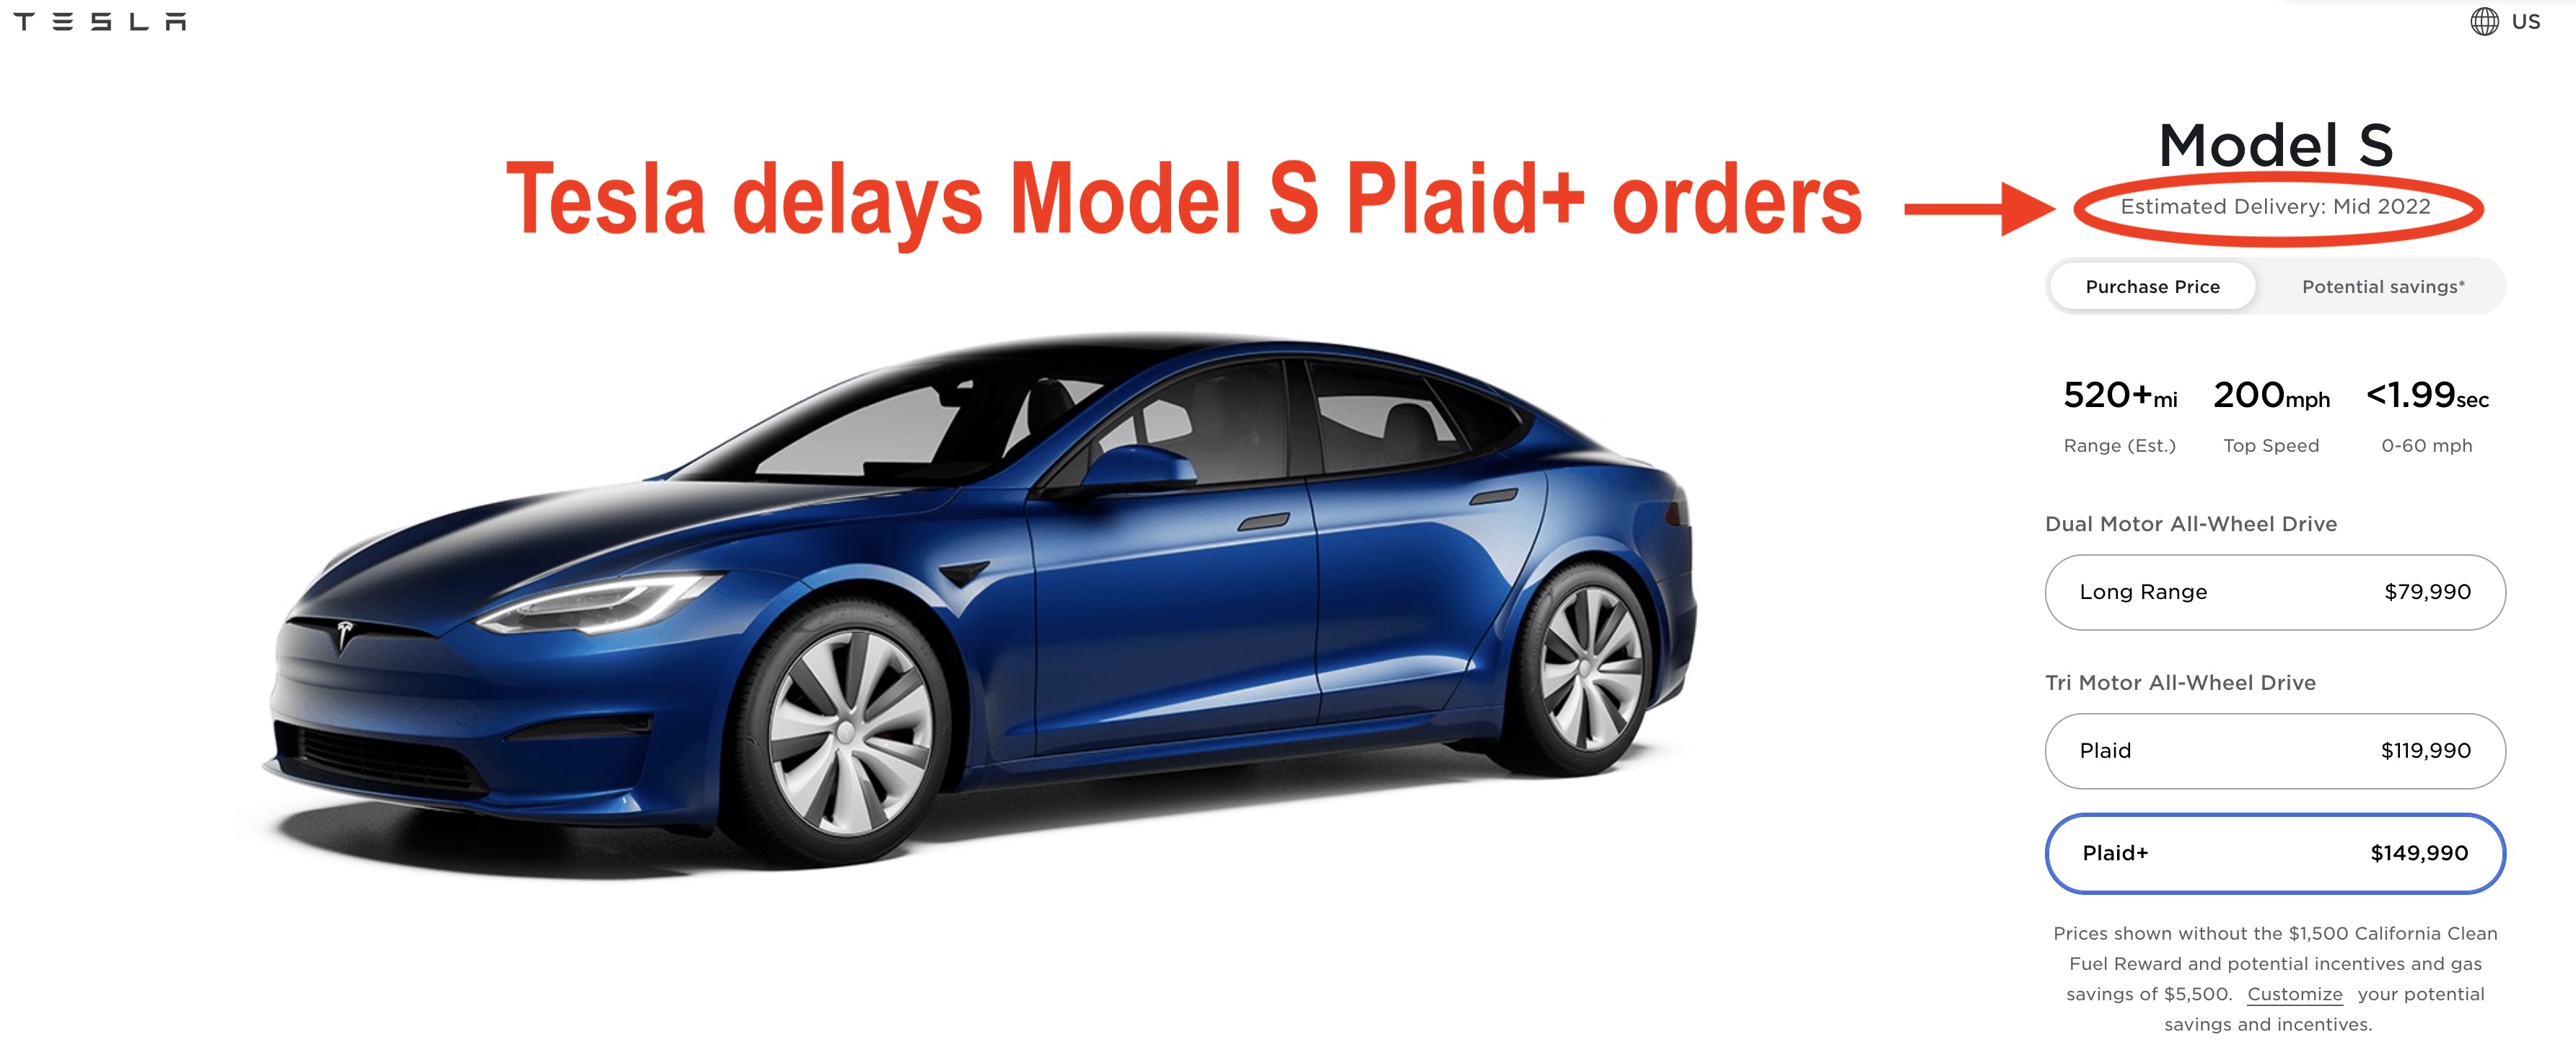 Voeding Wonder Rommelig Tesla delays new Model S Plaid Plus orders to 'mid-2022' - Electrek